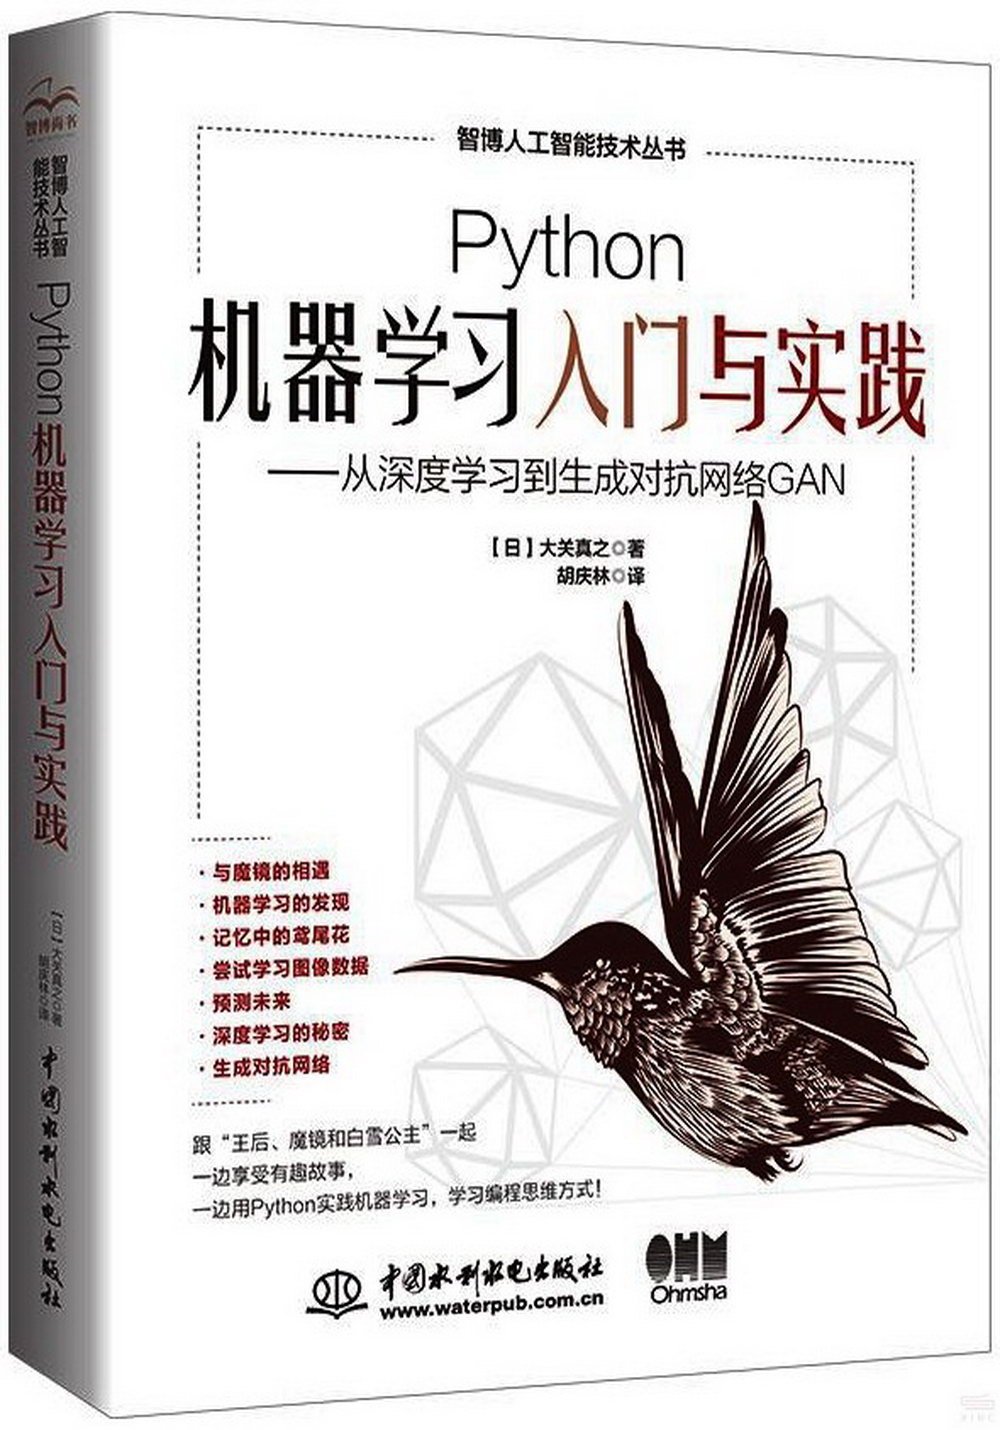 Python機器學習入門與實踐：從深度學習到生成對抗網絡GAN